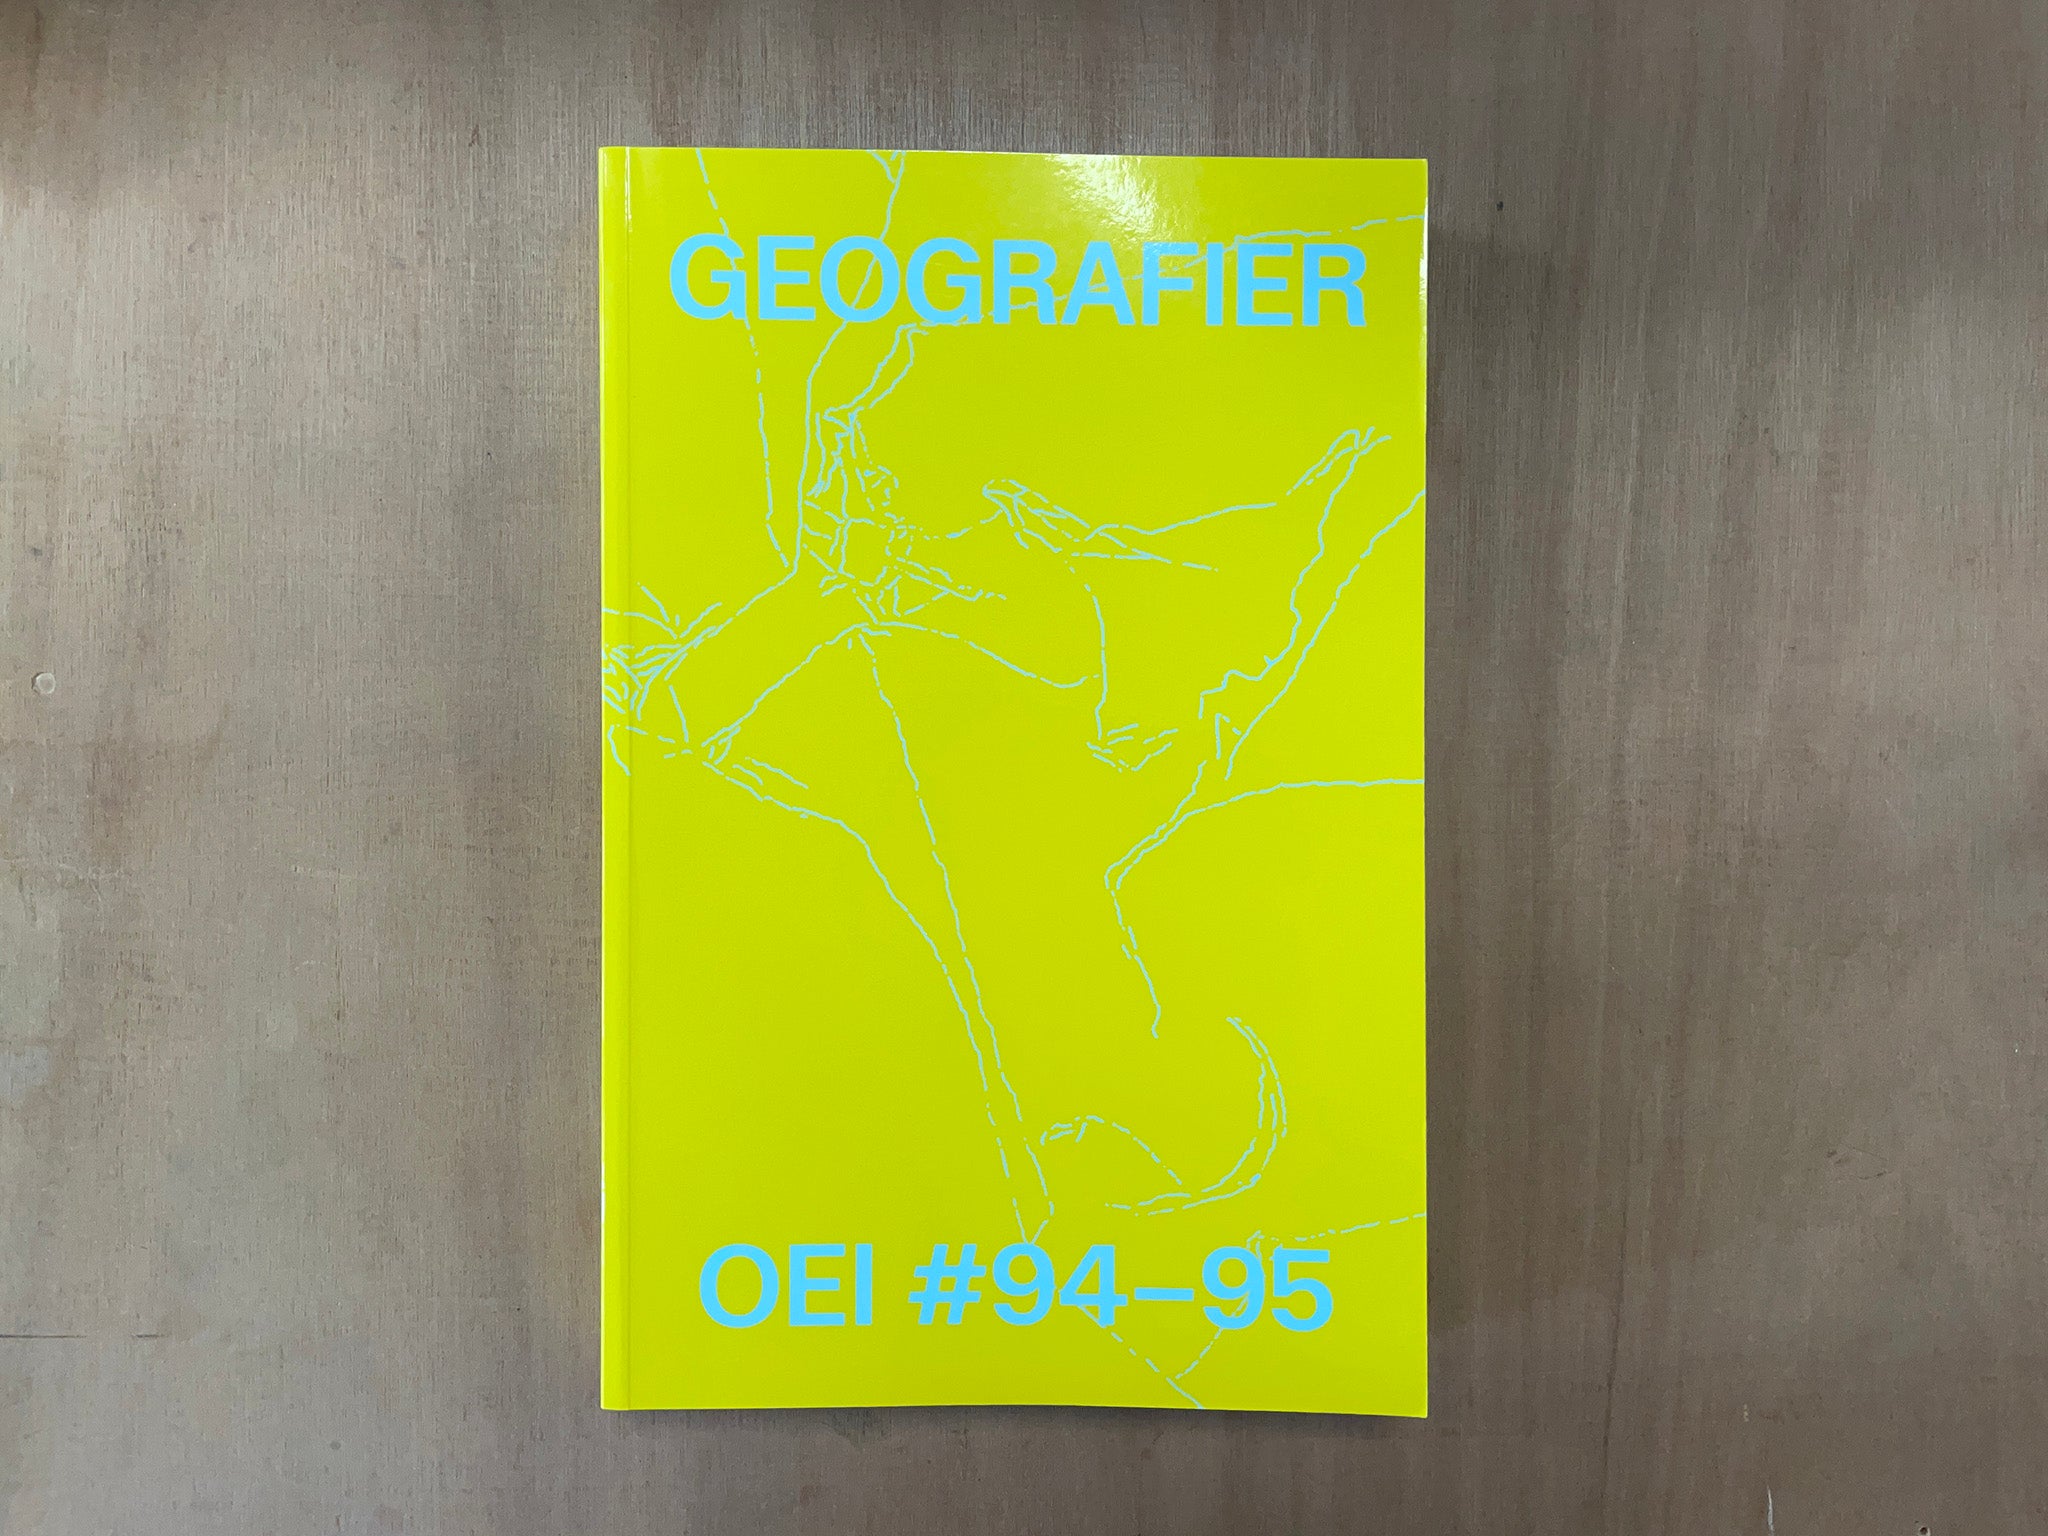 OEI #94-95: GEOGRAFIER